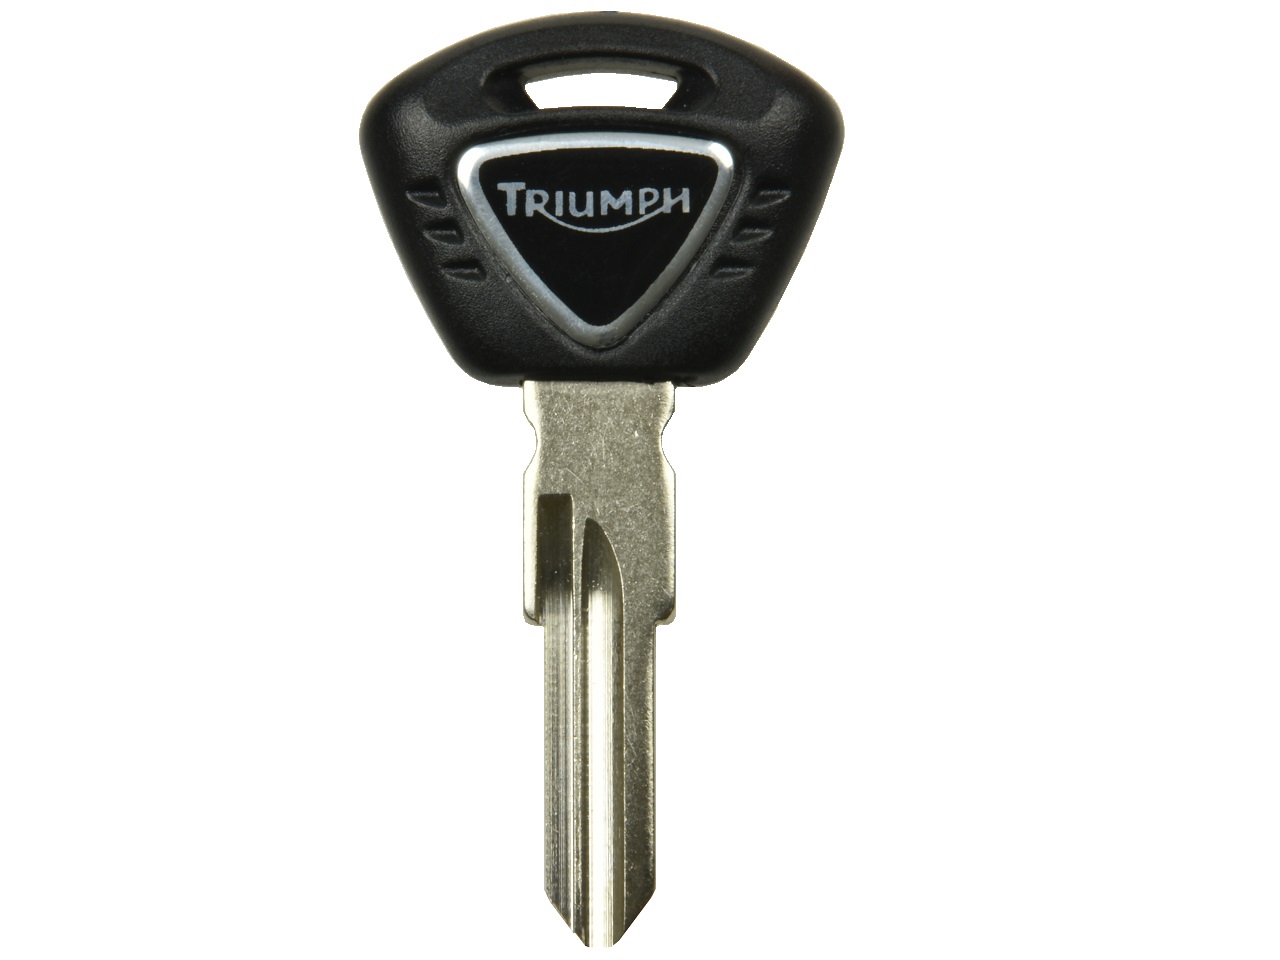 Chip chiave Triumph nuovo (con chip) - T2504558 - Clicca l'immagine per chiudere